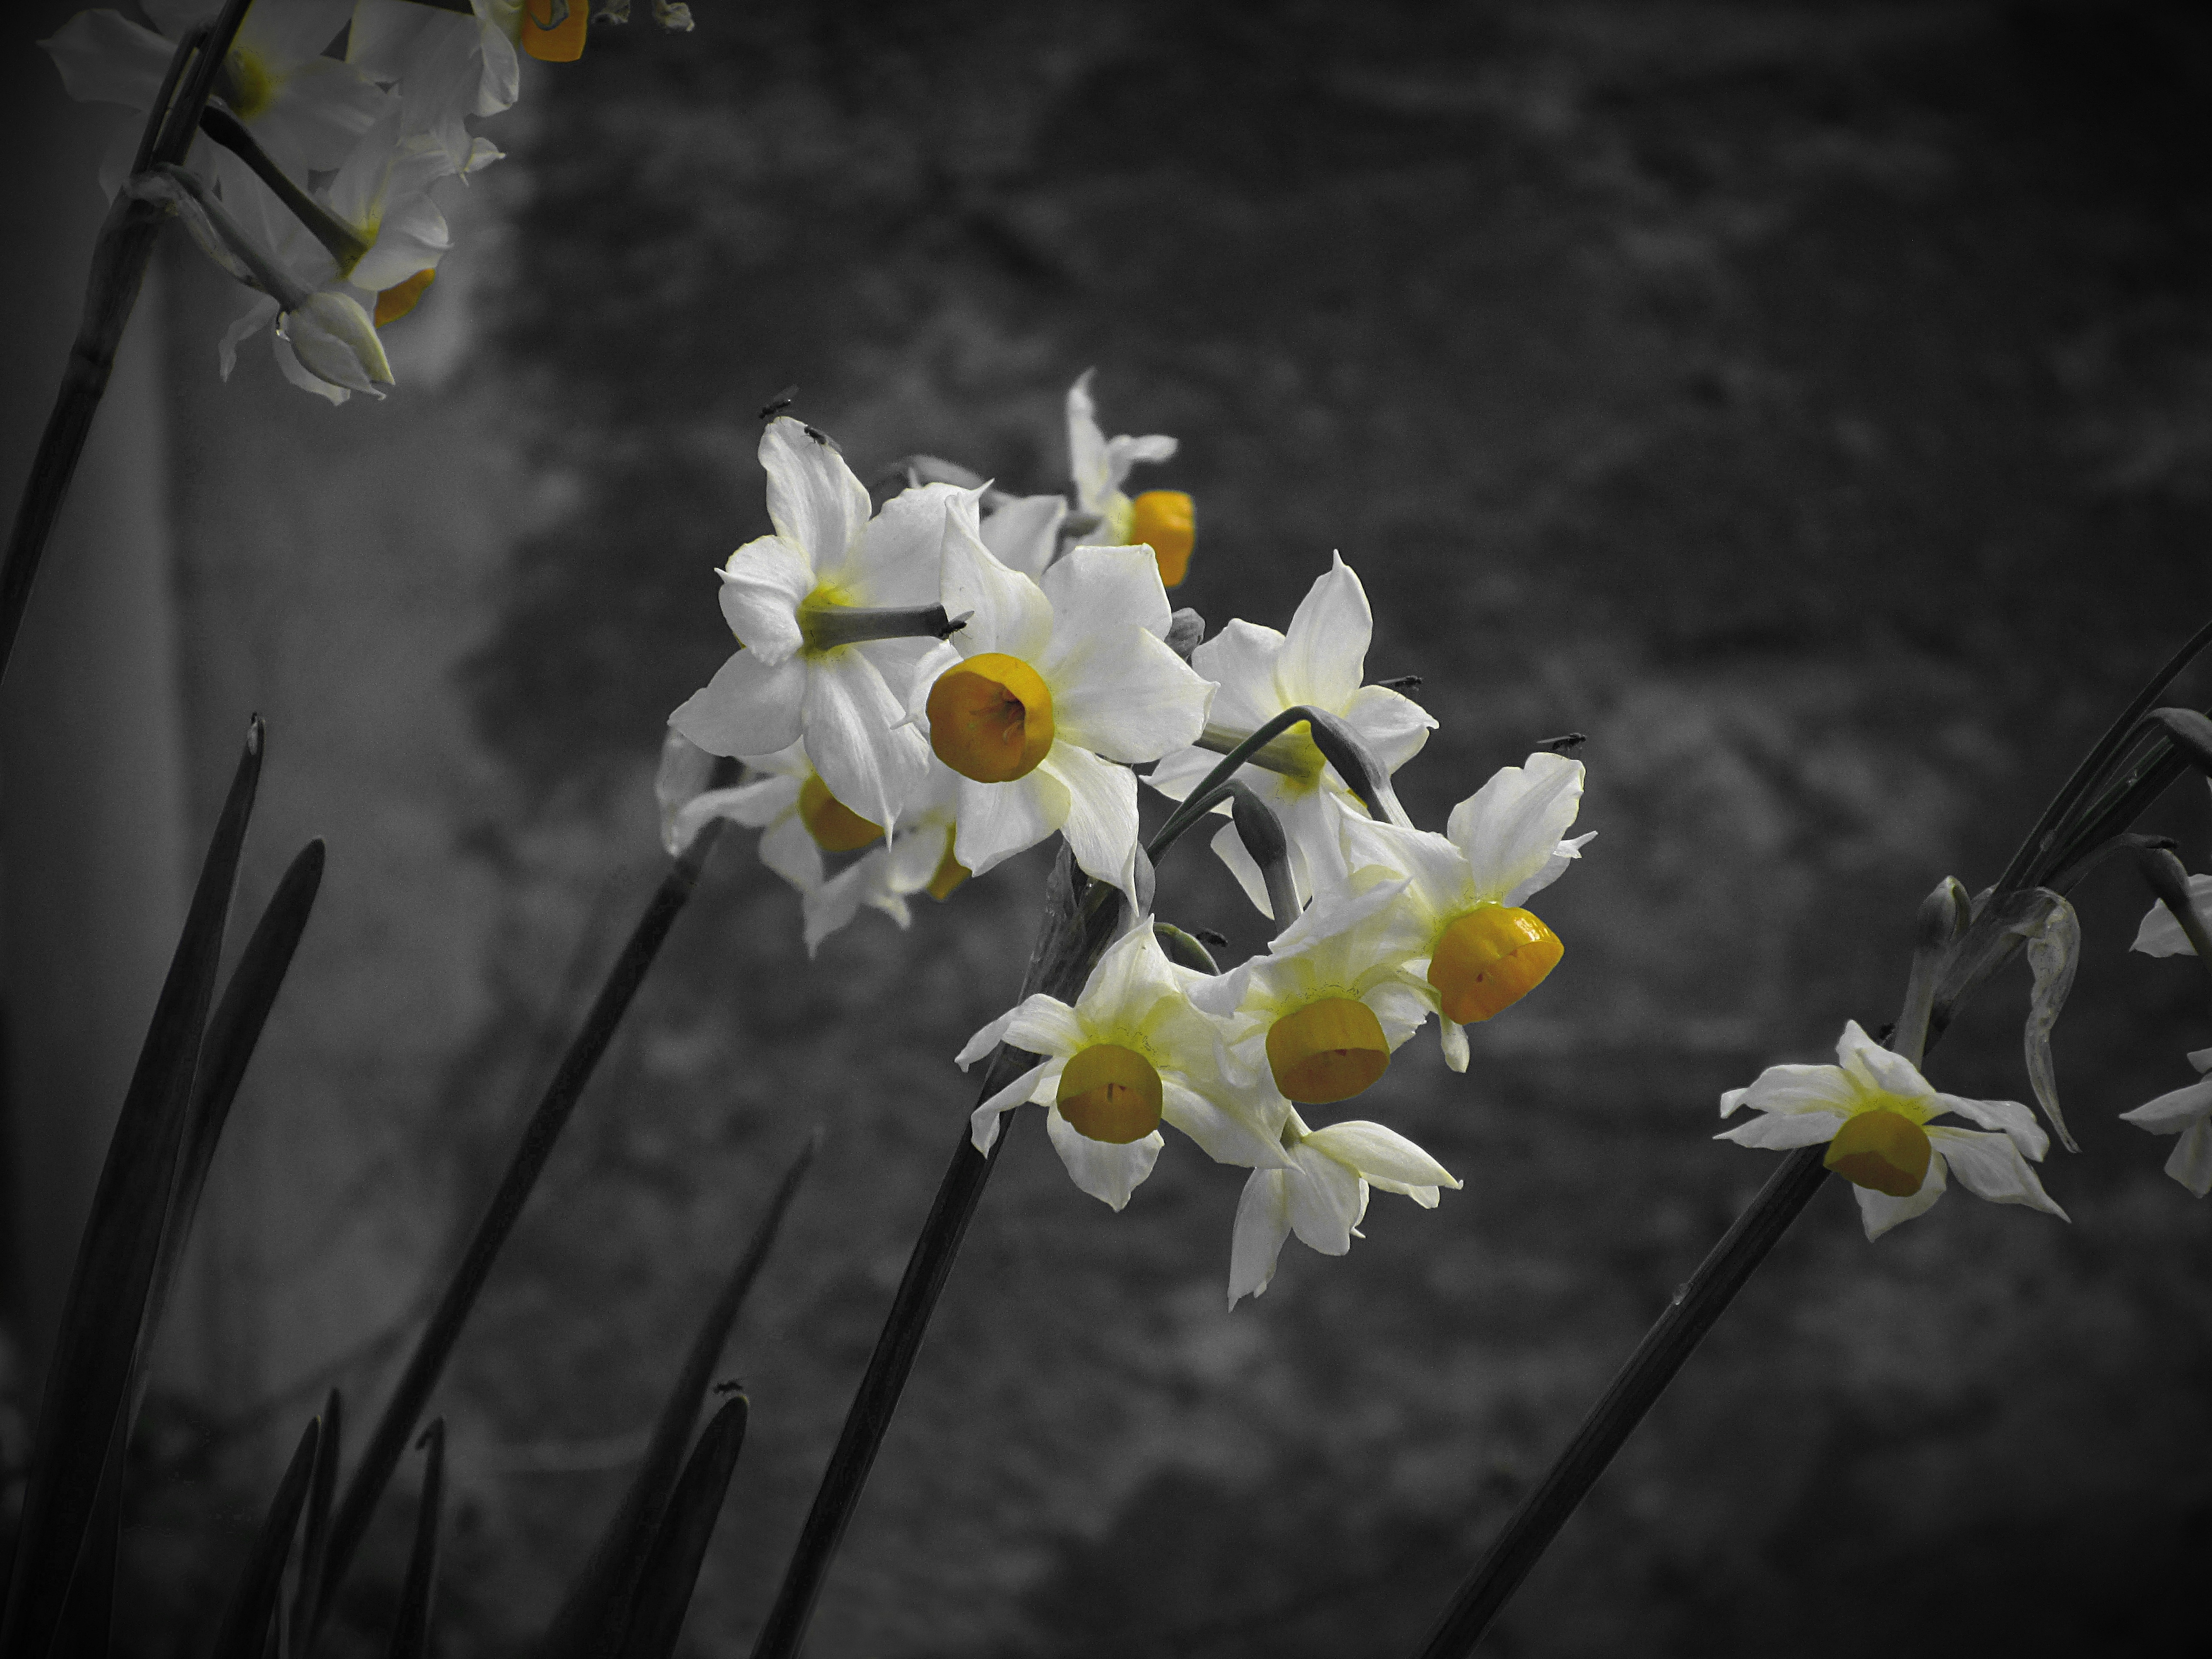 white clustered petaled flower